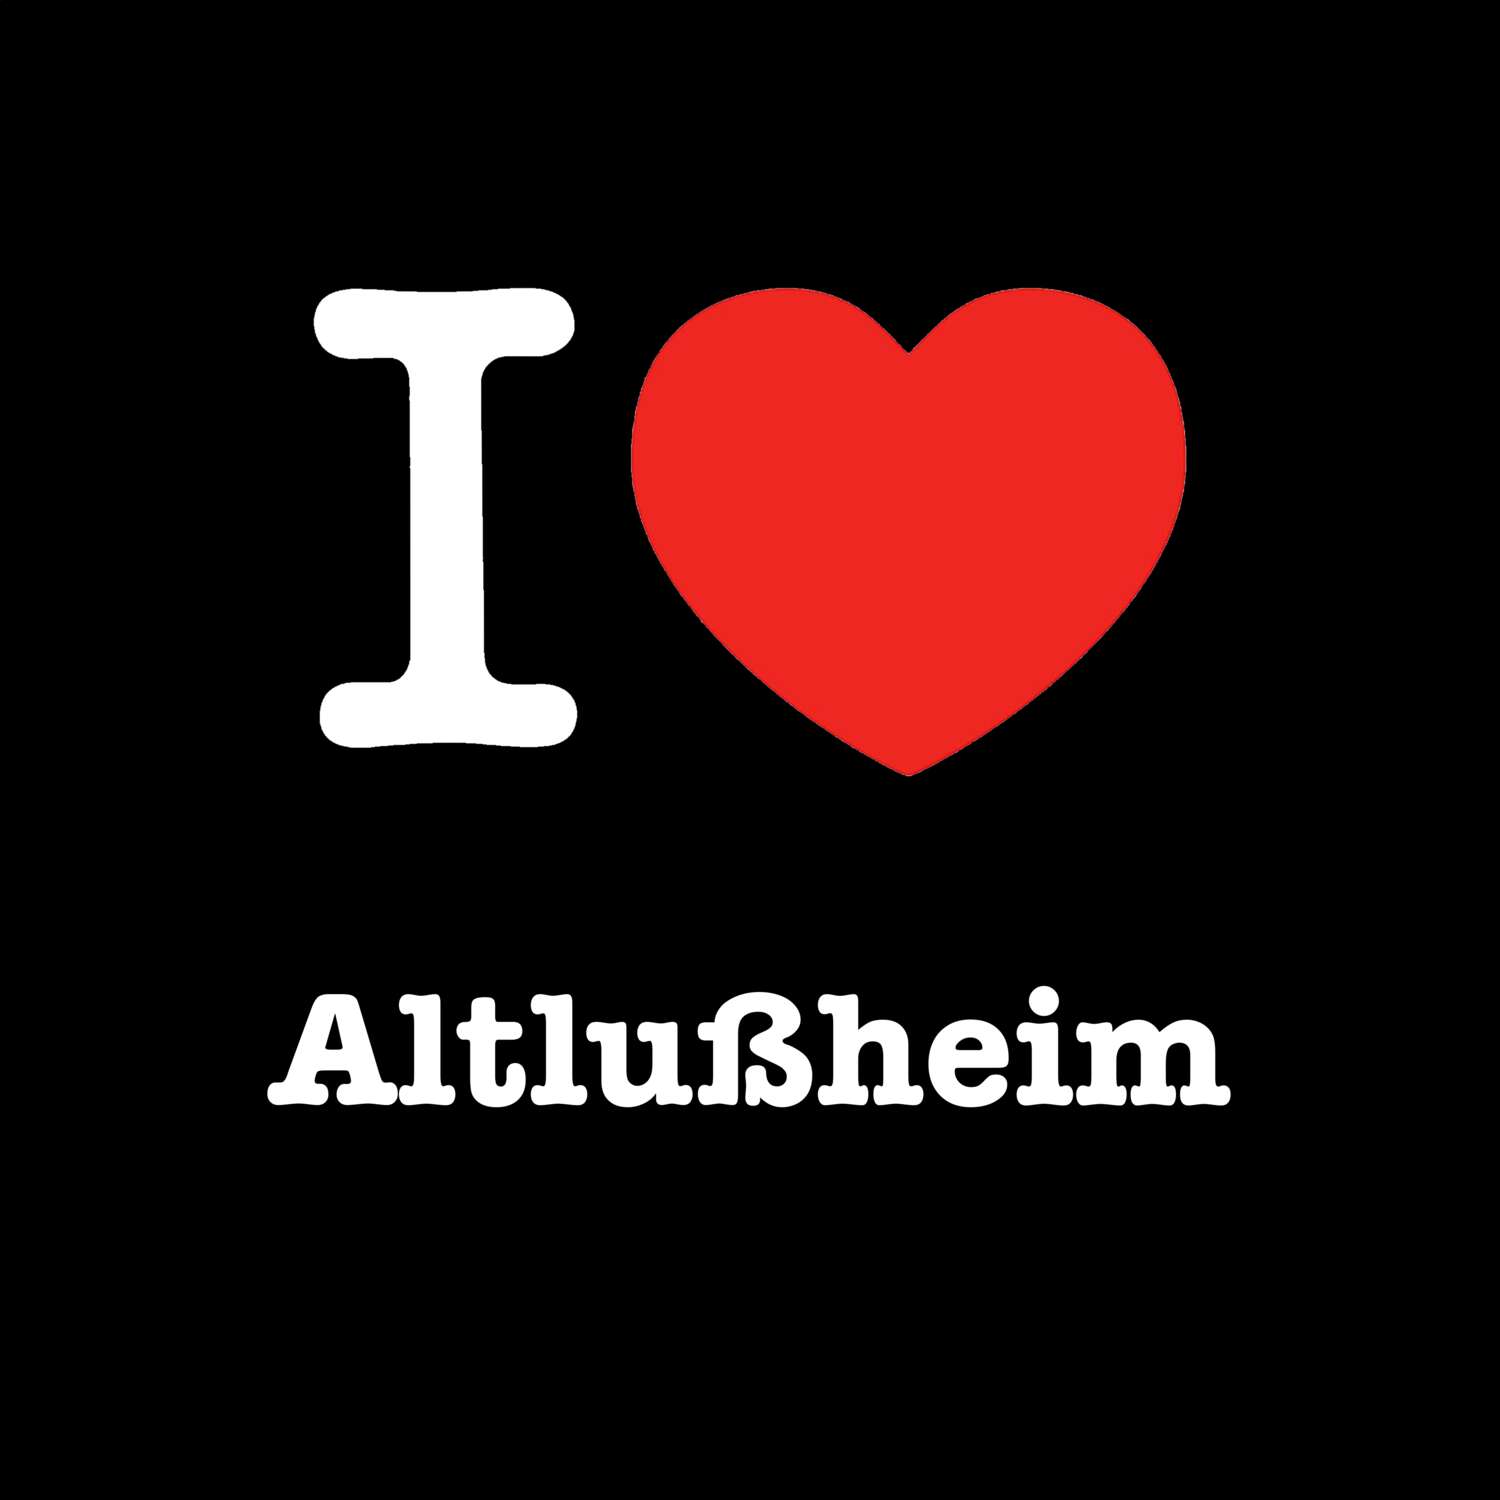 Altlußheim T-Shirt »I love«